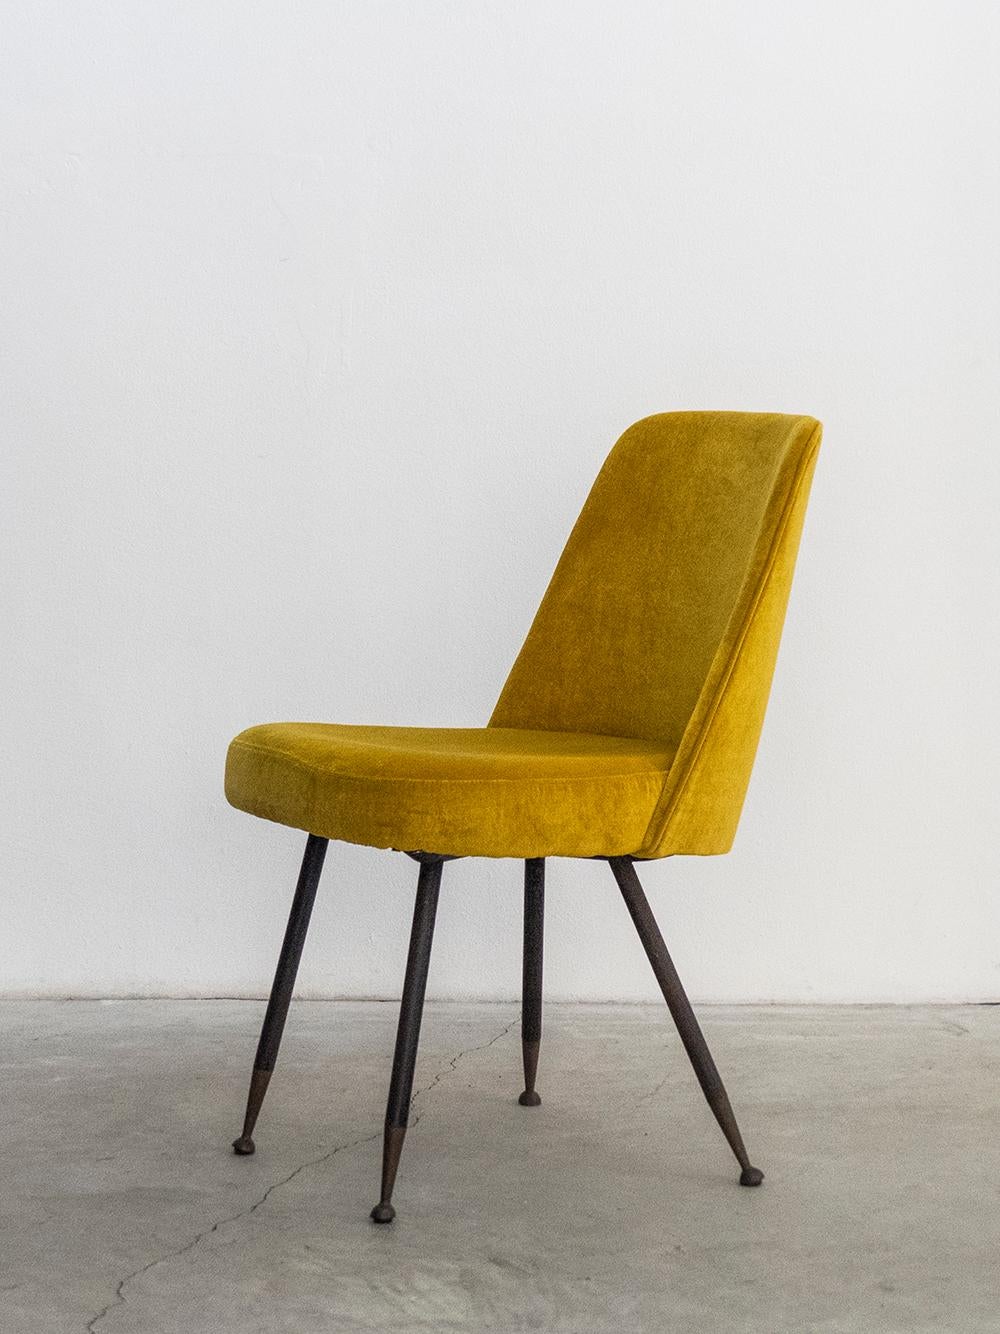 Mid-20th Century Gastone Rinaldi Restored Midcentury Velvet Desk Chair for RIMA, 1950s For Sale